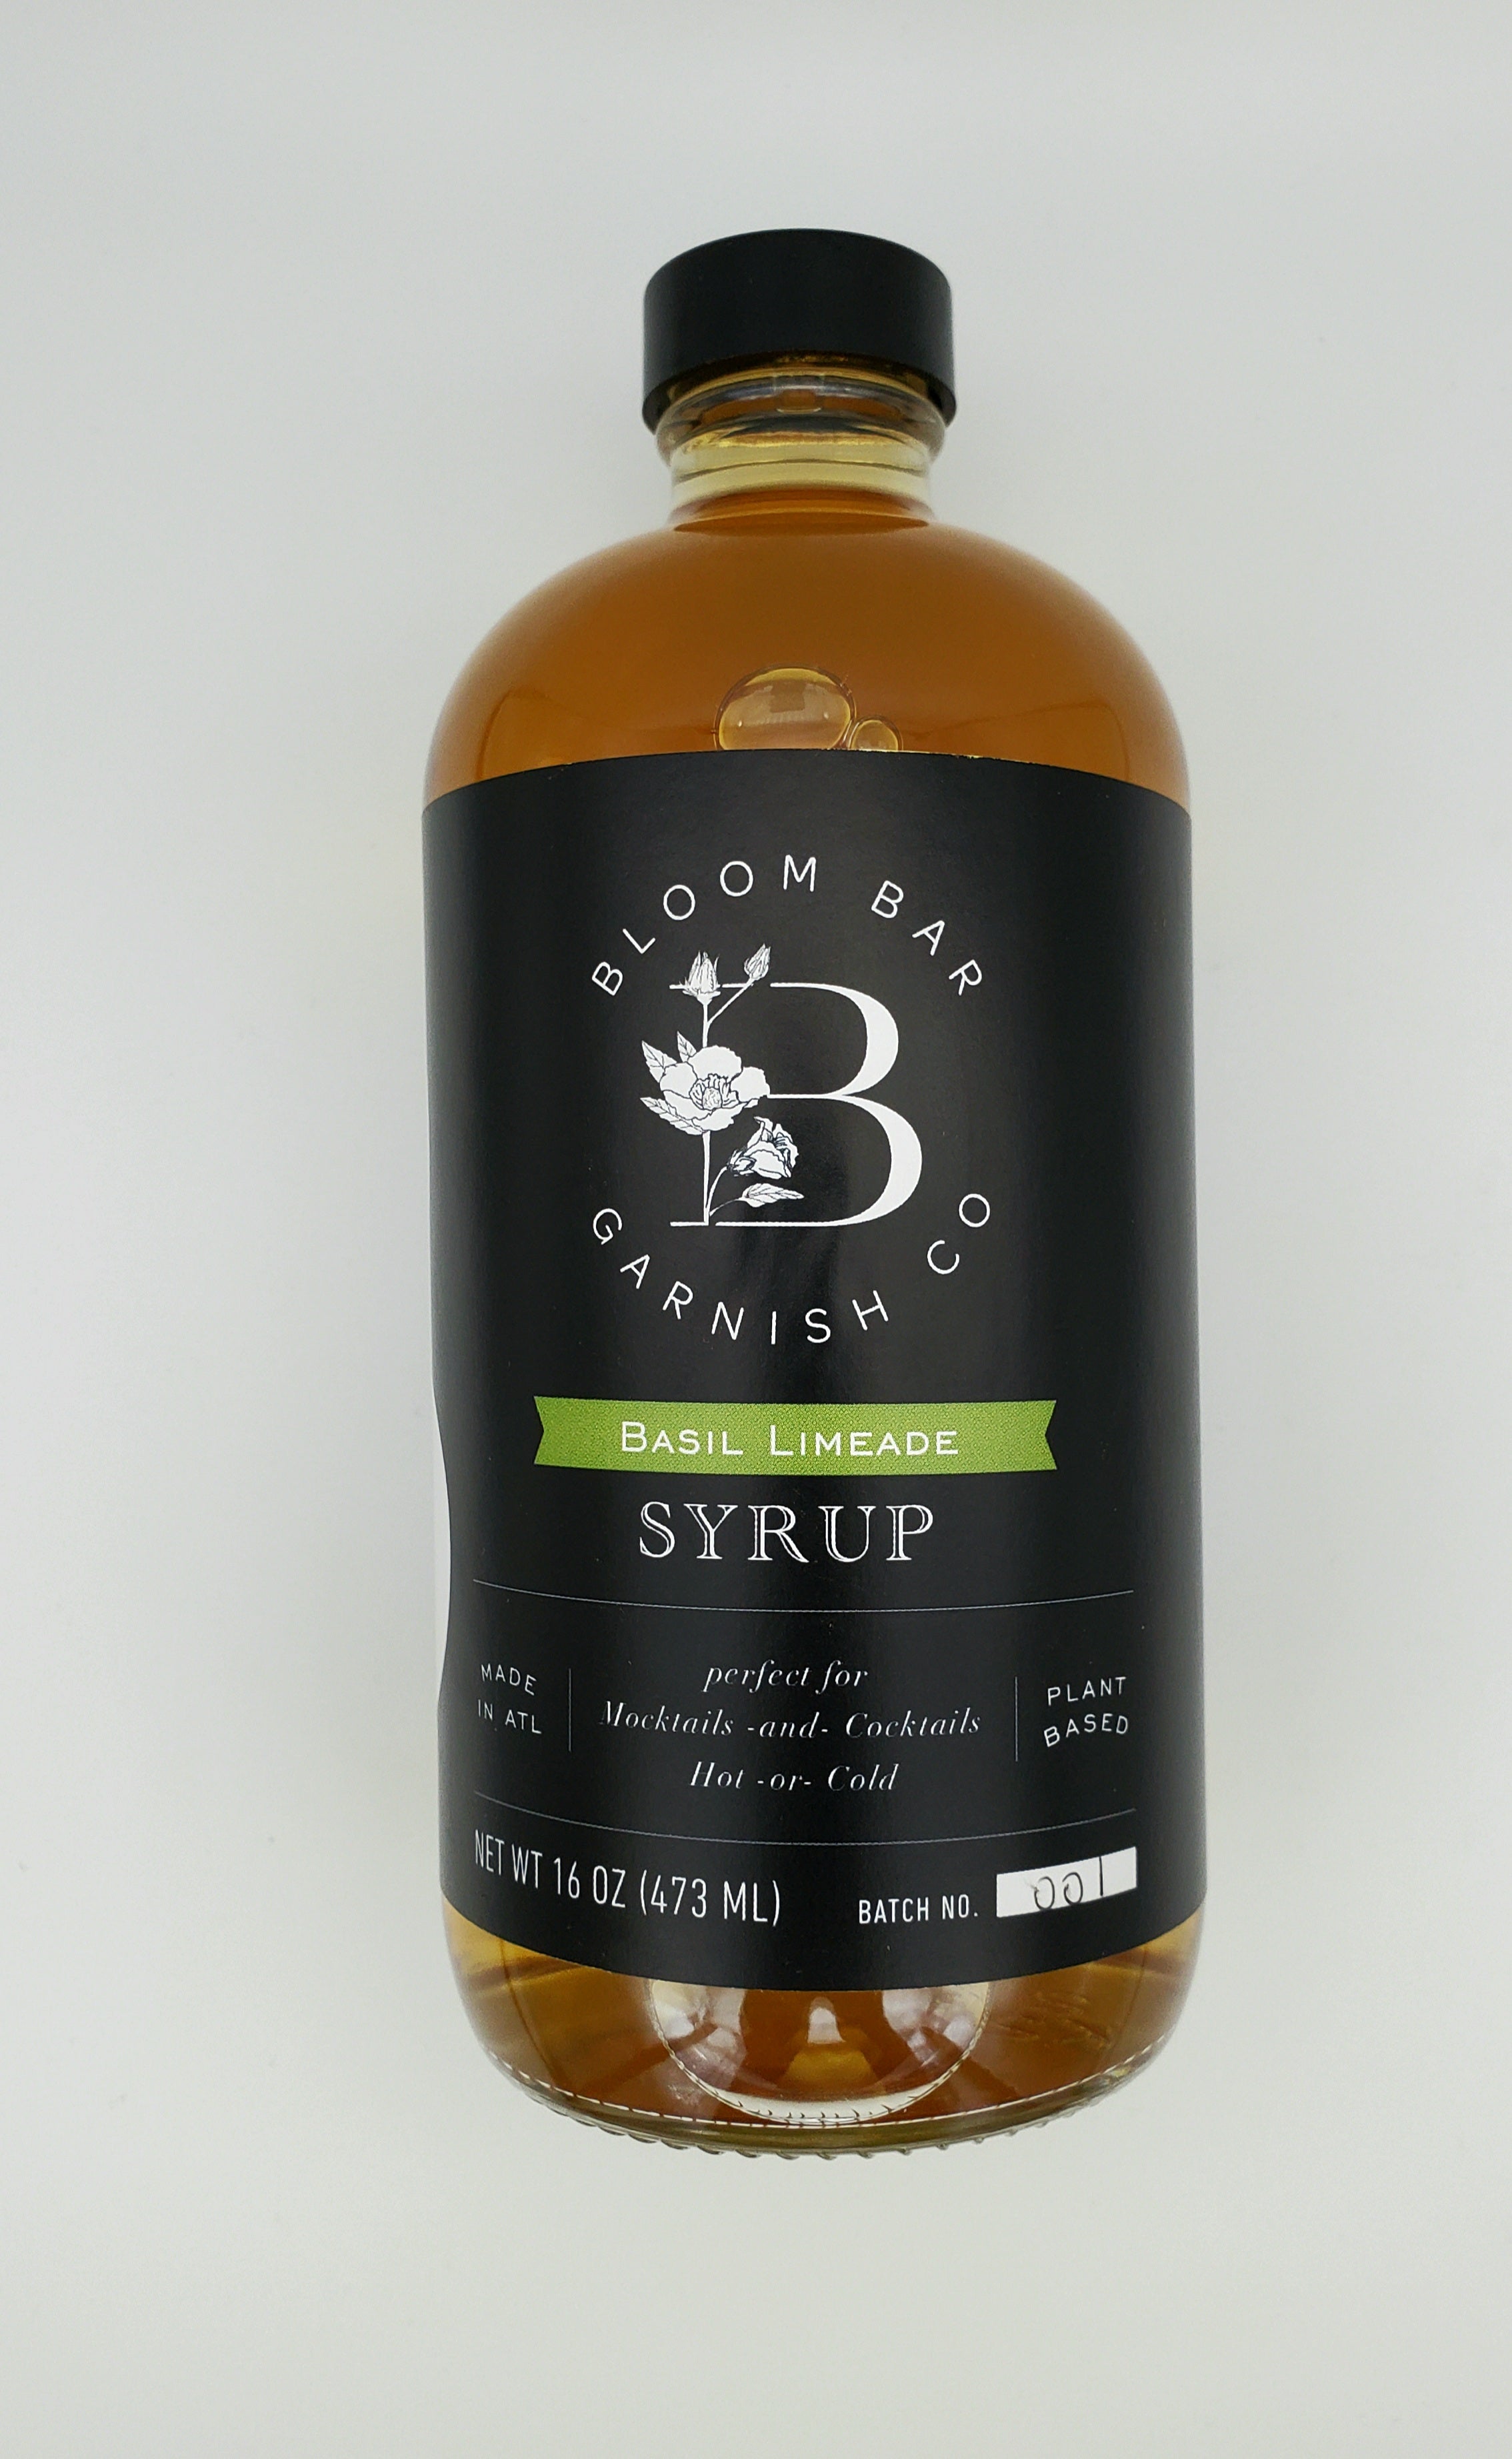 Basil-Limeade Syrup